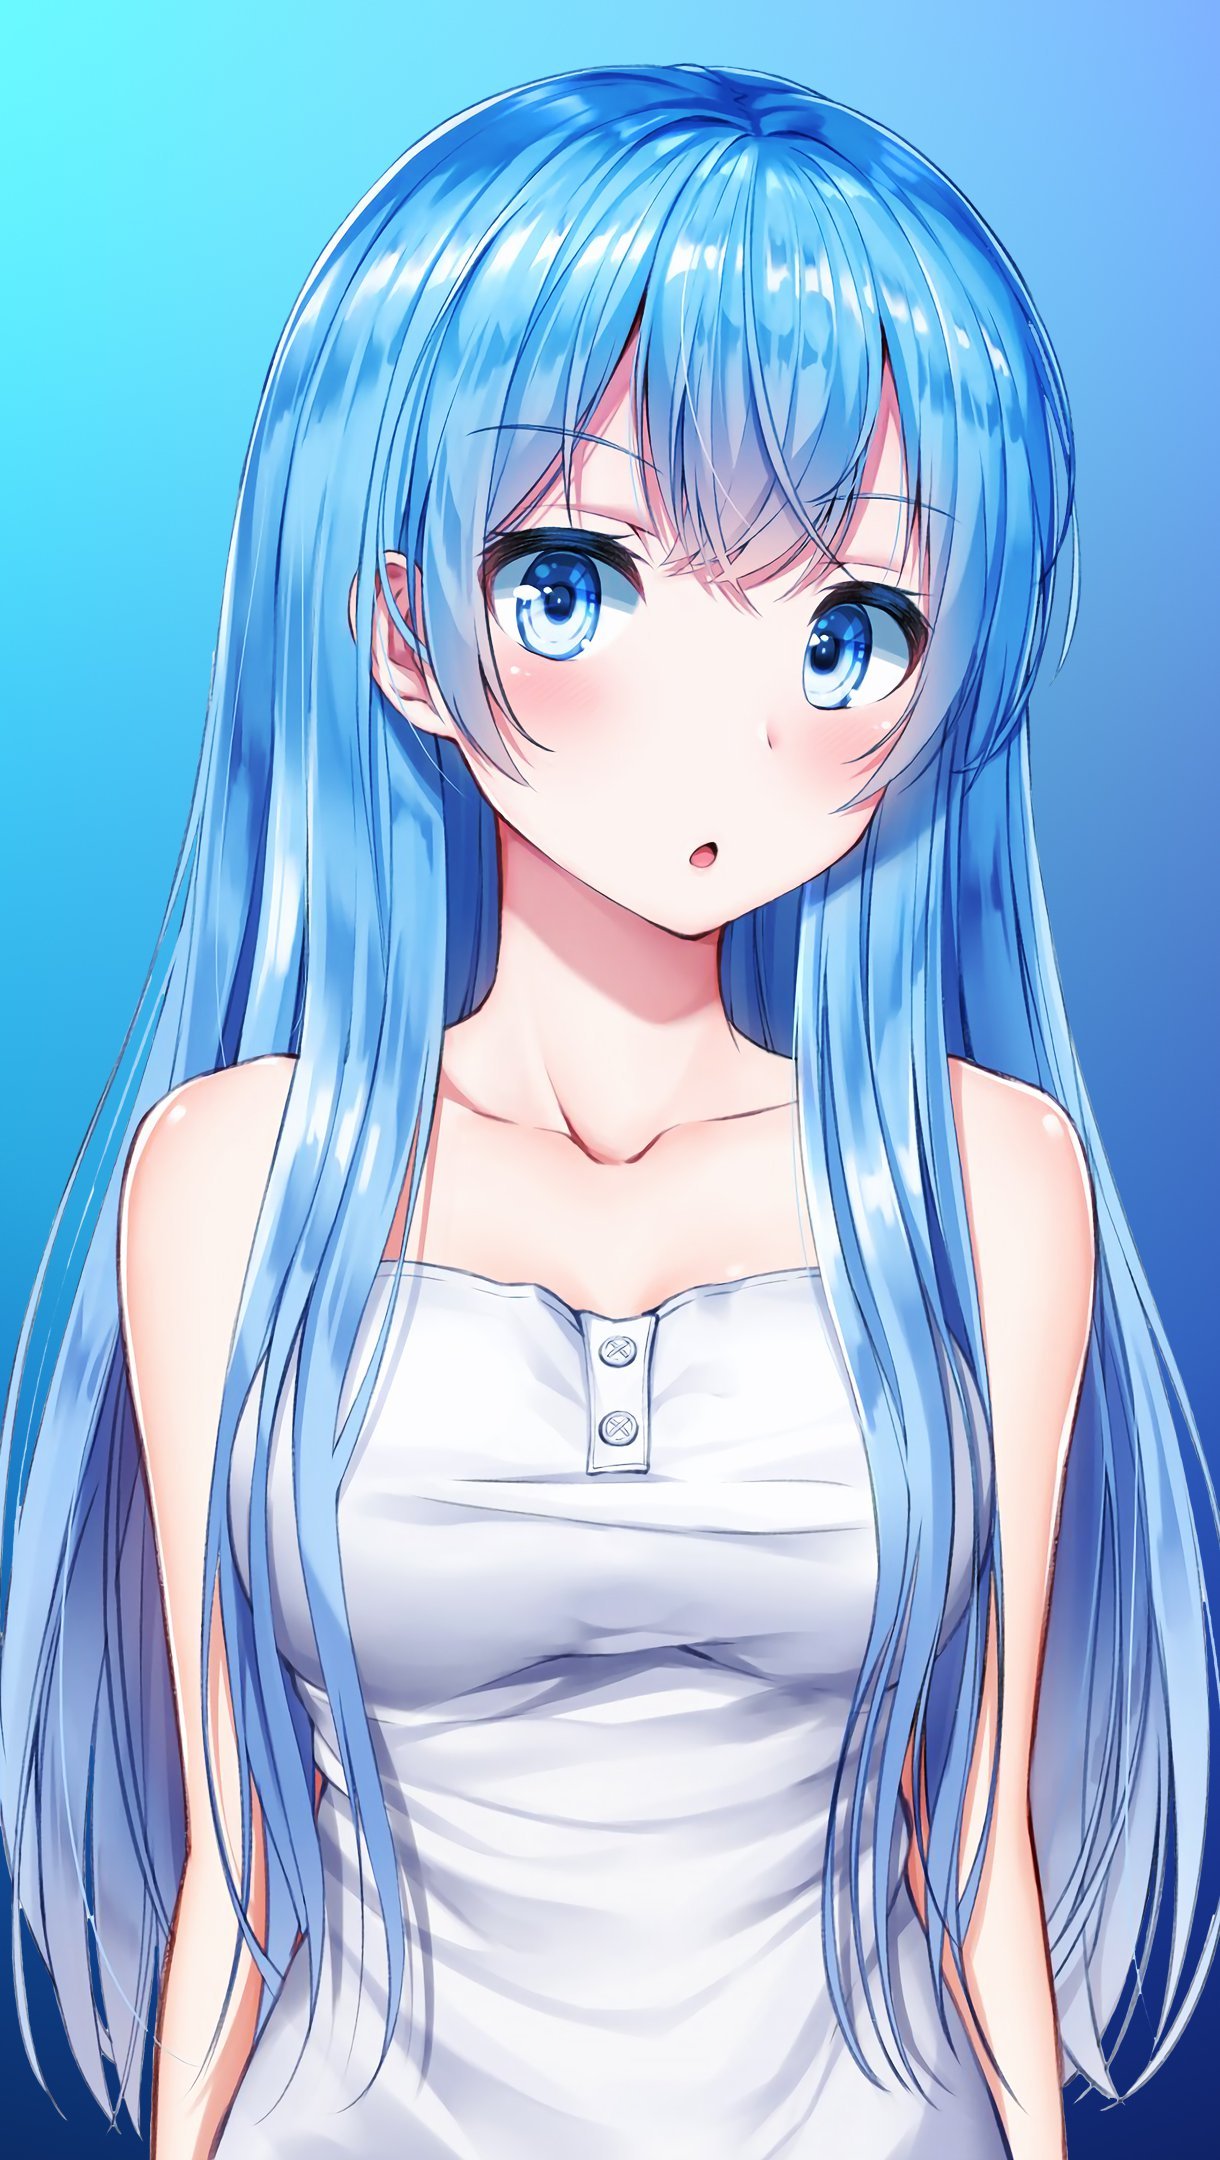 Wallpaper Anime Girl Blue Vertical